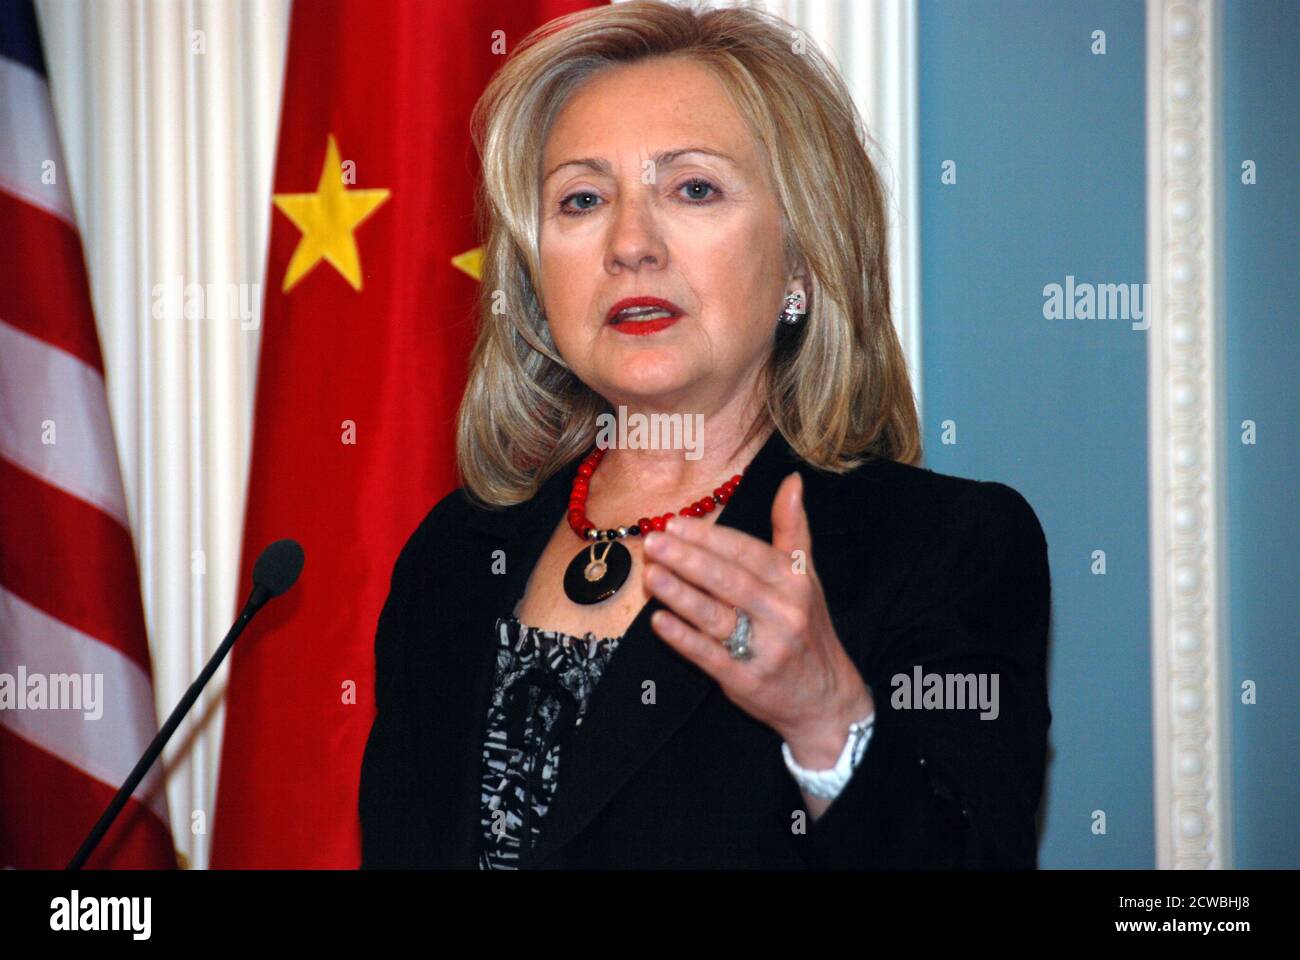 Fotografia di Hilary Clinton che parla come Segretario di Stato degli Stati Uniti. Hillary Diane Rodham Clinton (1947-) un politico, diplomatico, avvocato, scrittore e oratore pubblico americano. Foto Stock